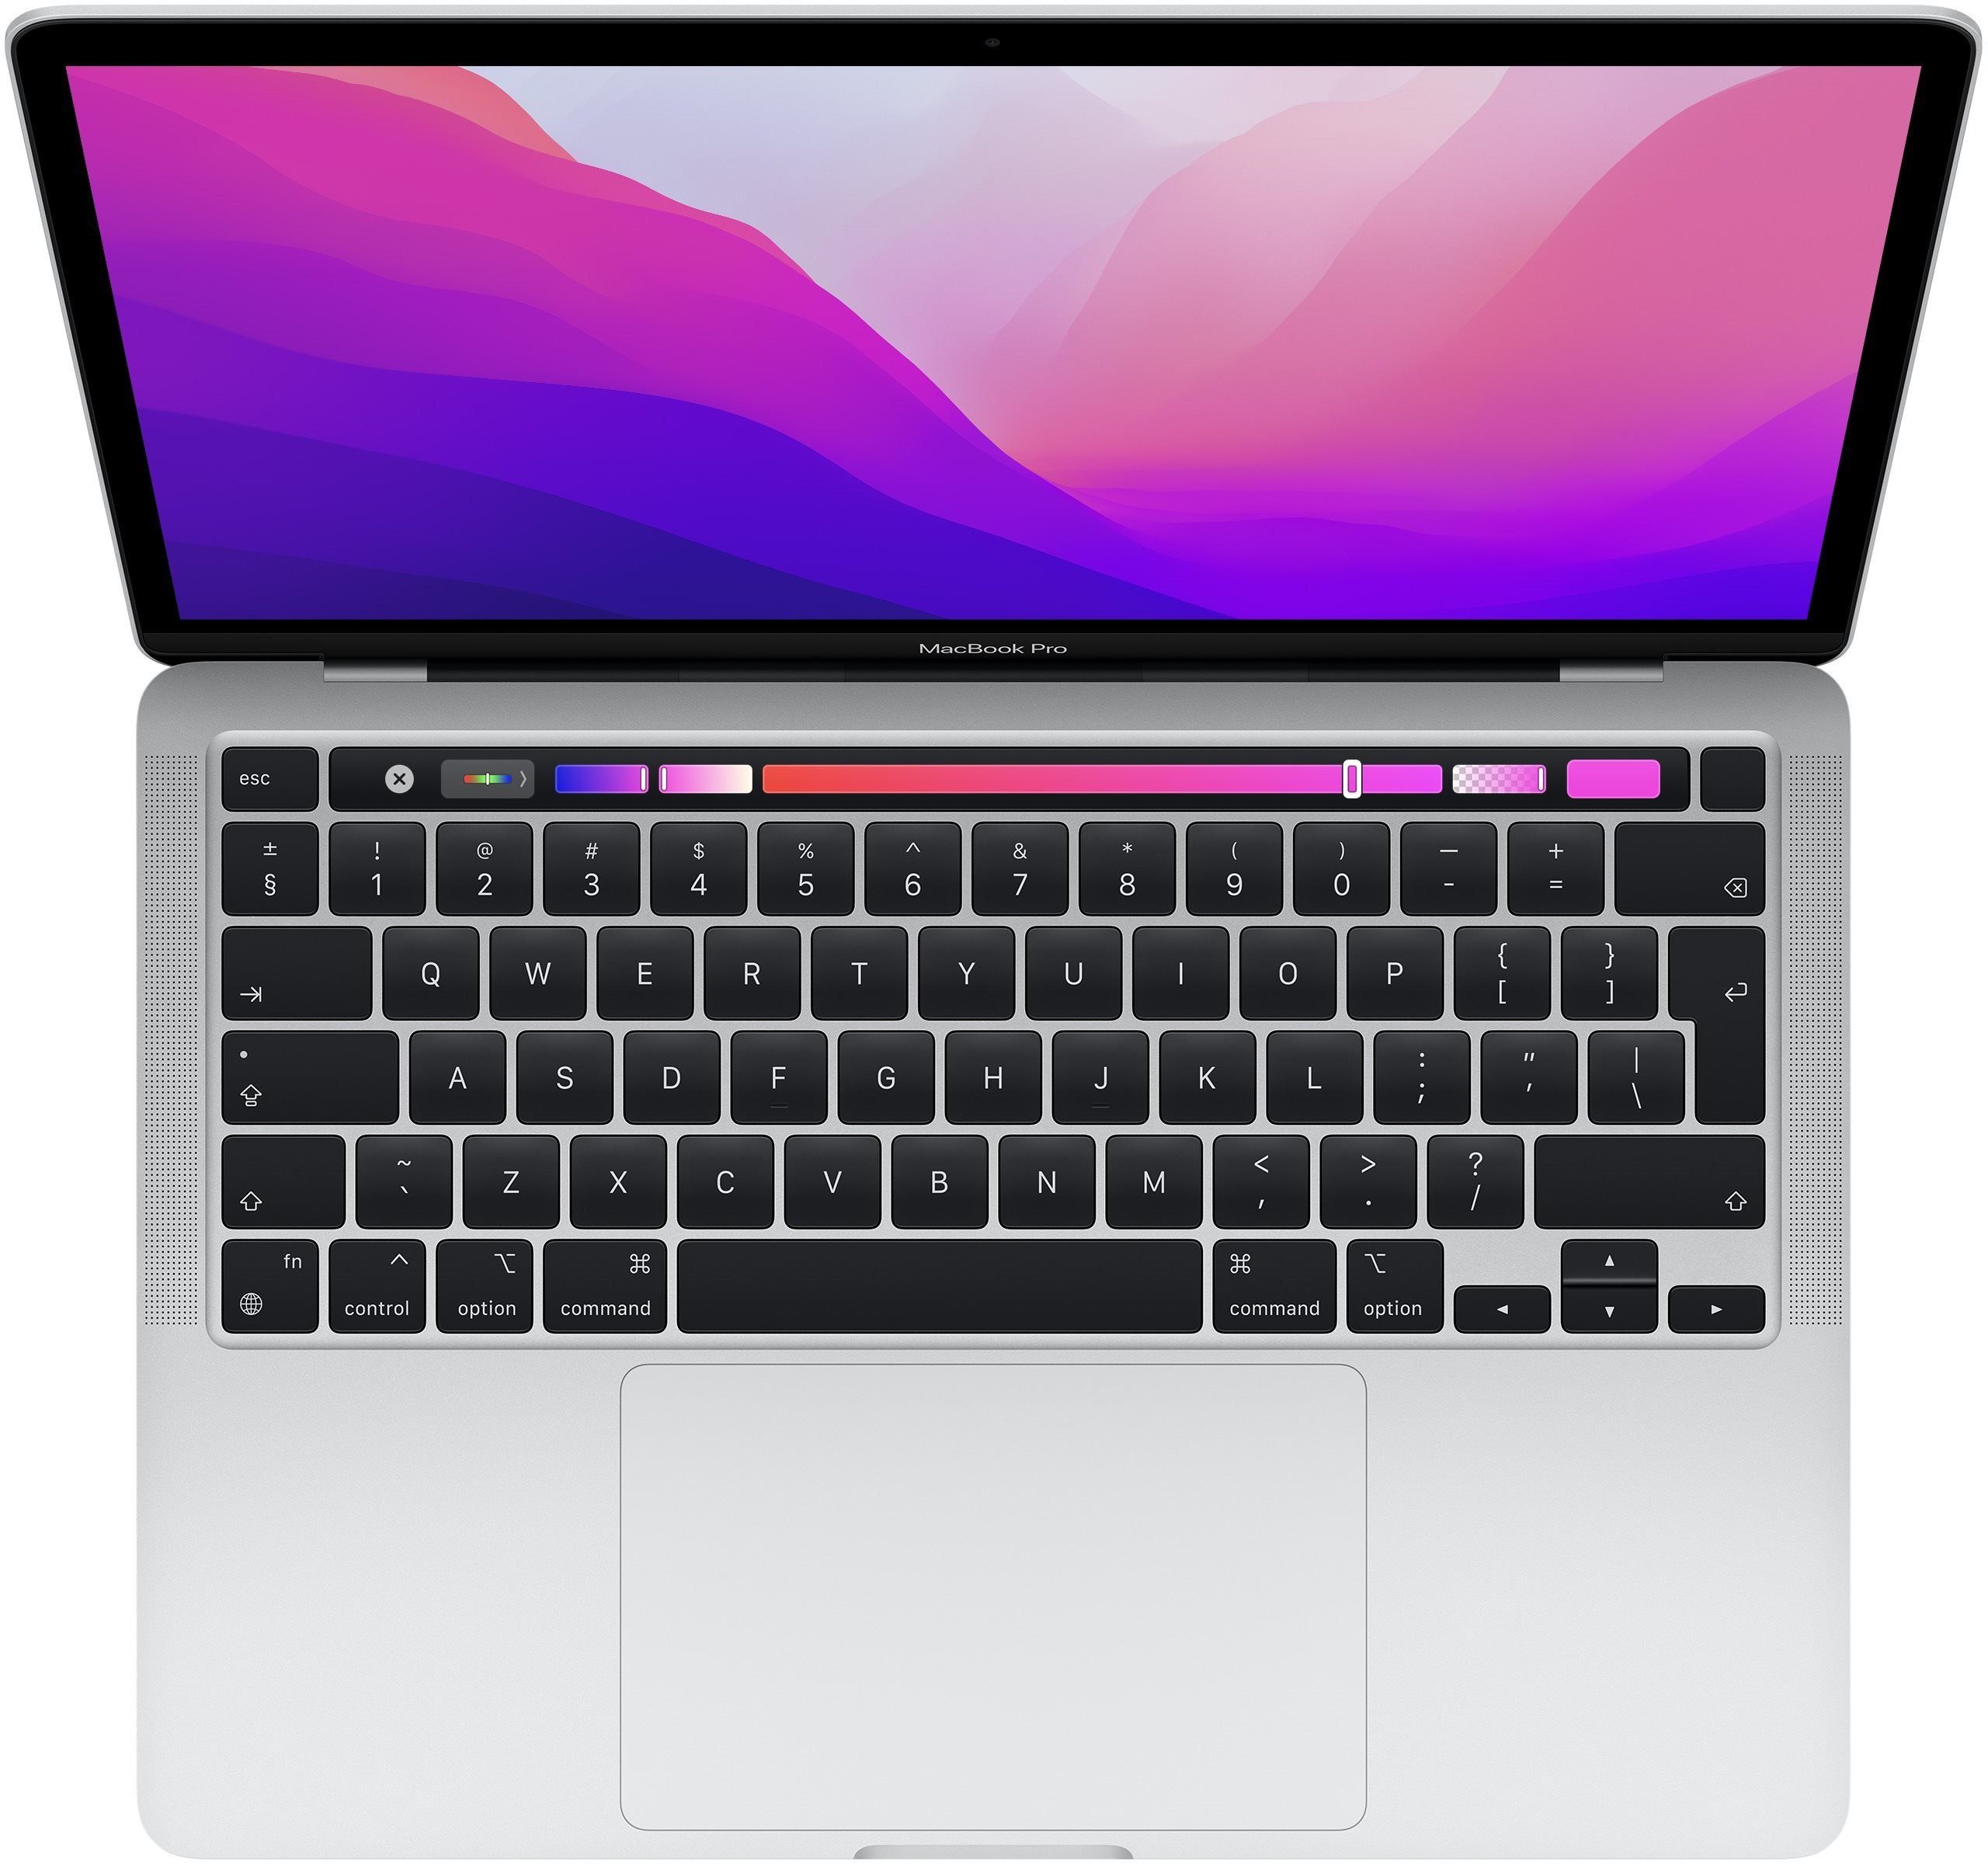 Nový MacBook Pro M2 má vylepšenou klávesnici Magic Keyboard s nůžkovým mechanismem a s 1mm zdvihem pro tiché psaní a přesnou odezvu.